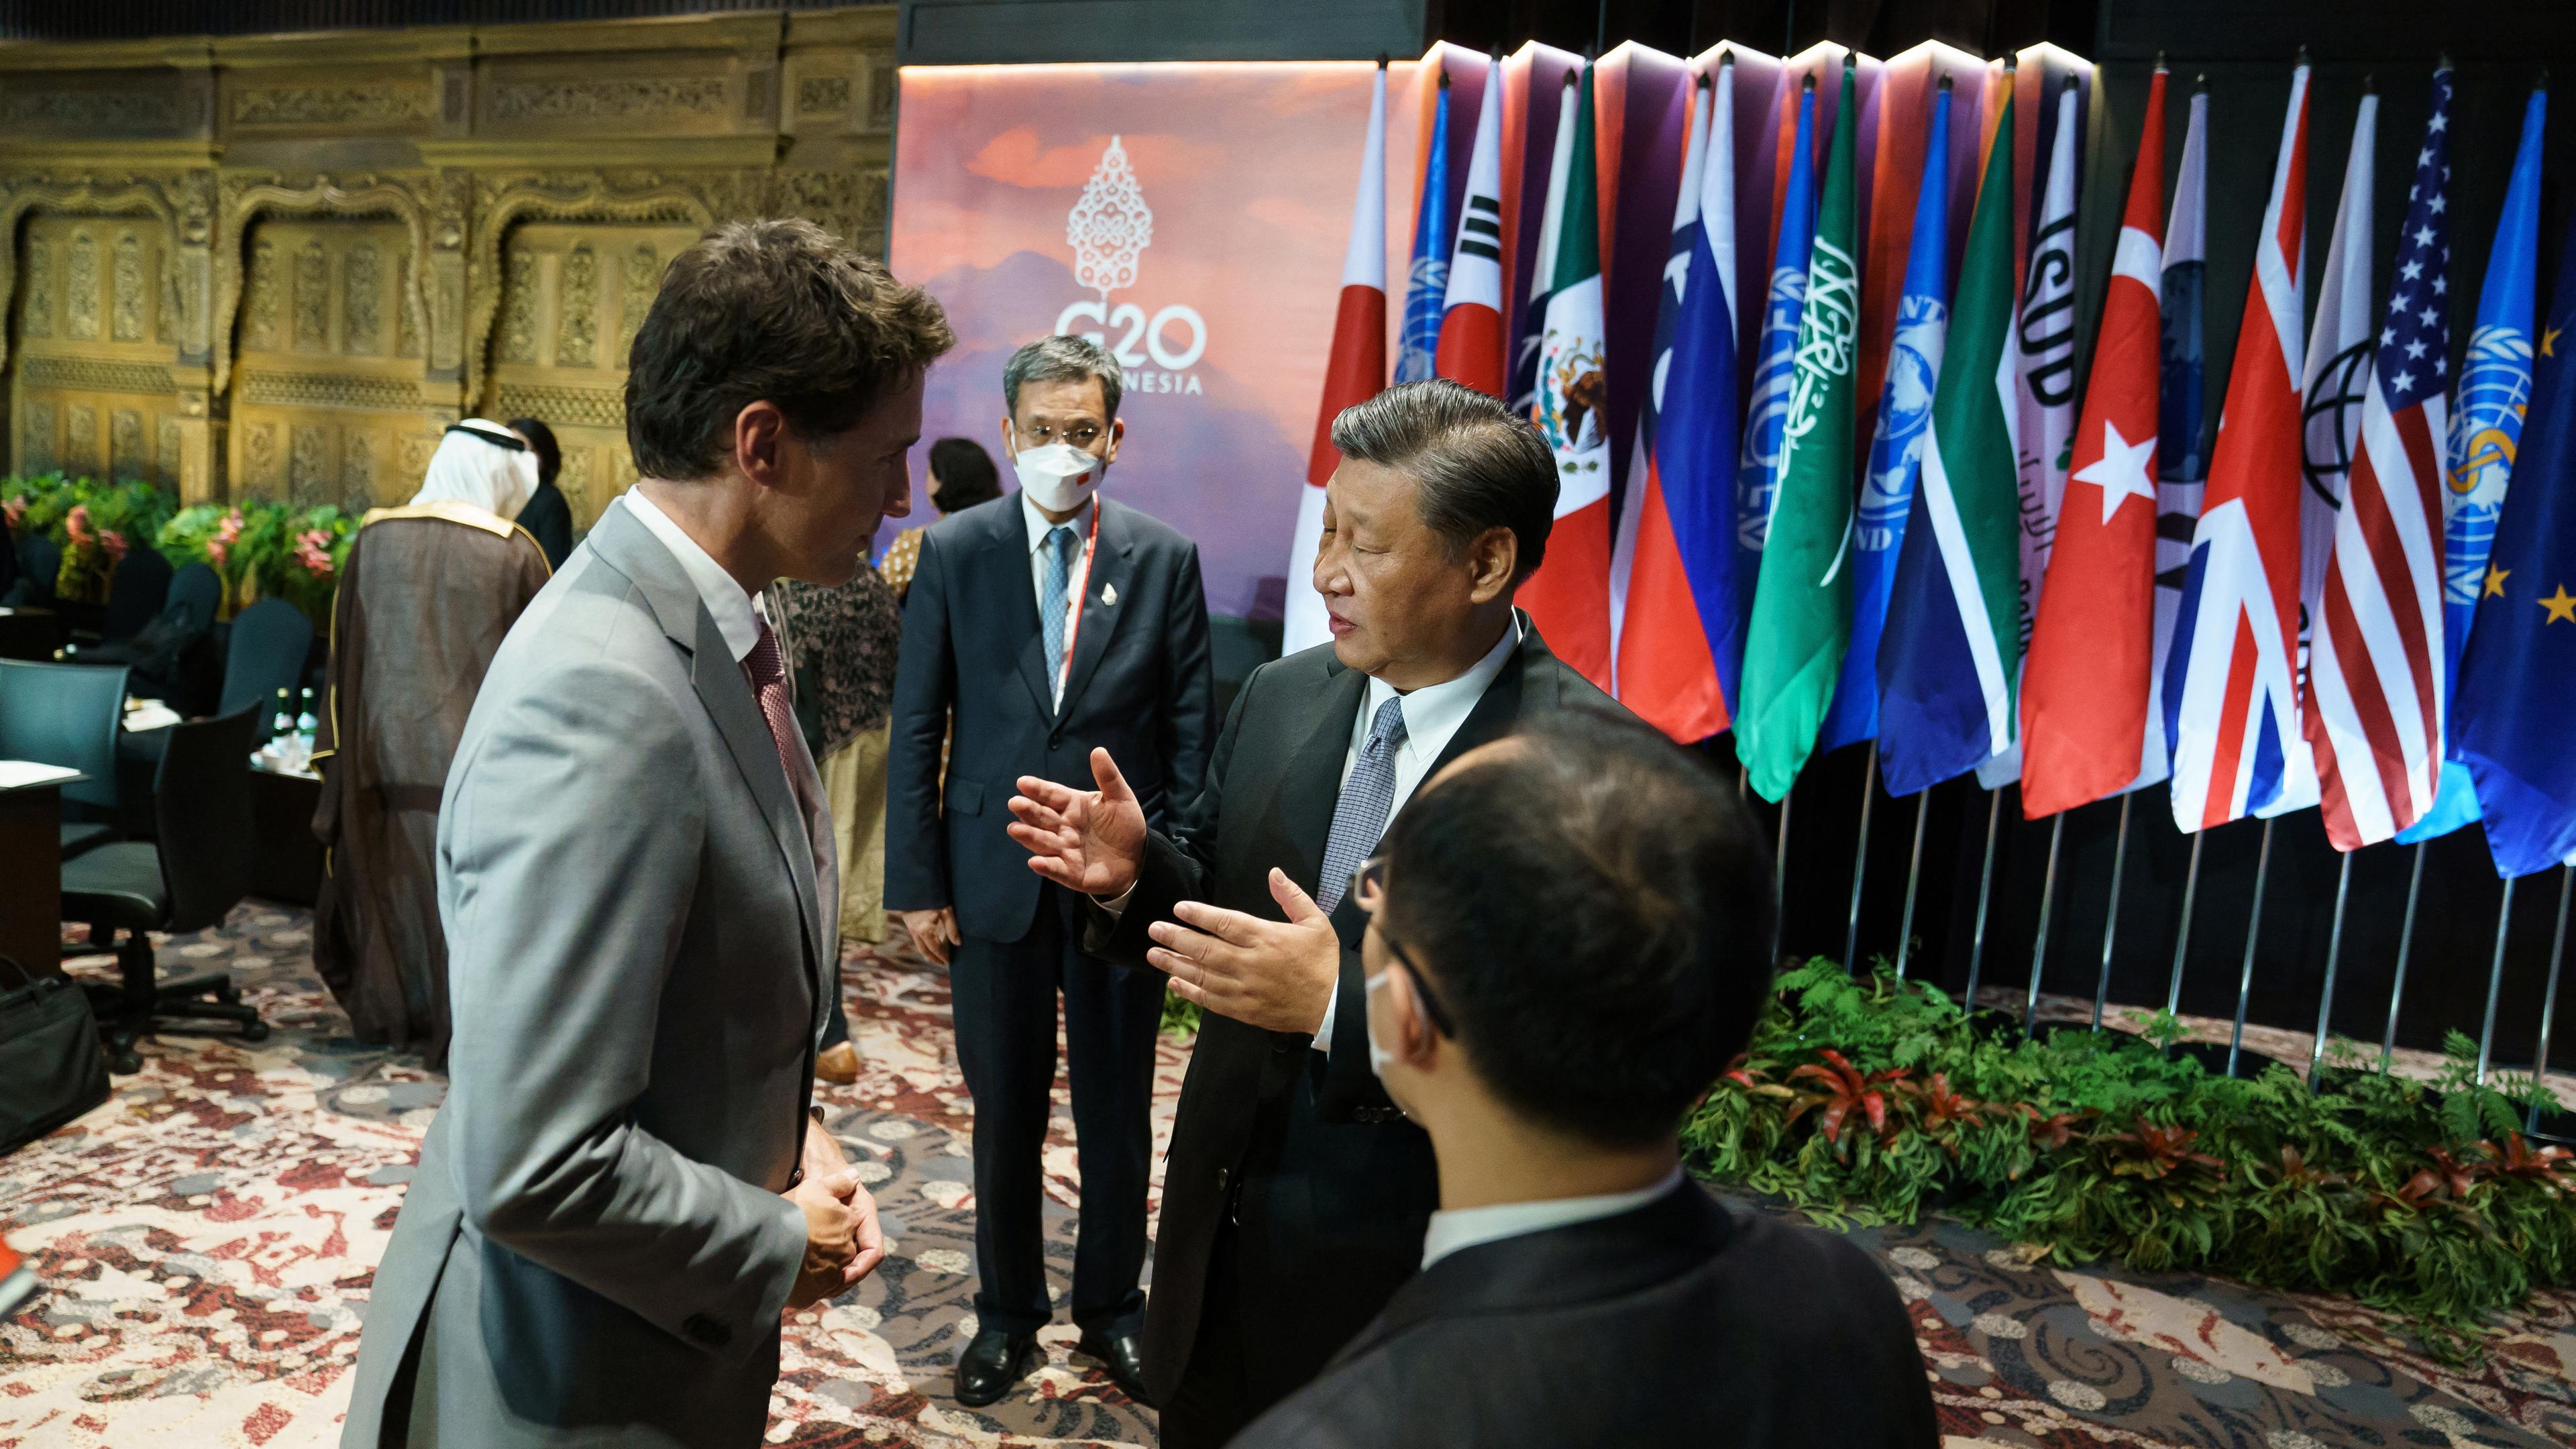 Xi und Trudeau sprechen auf dem G20 Gipfel miteinander.